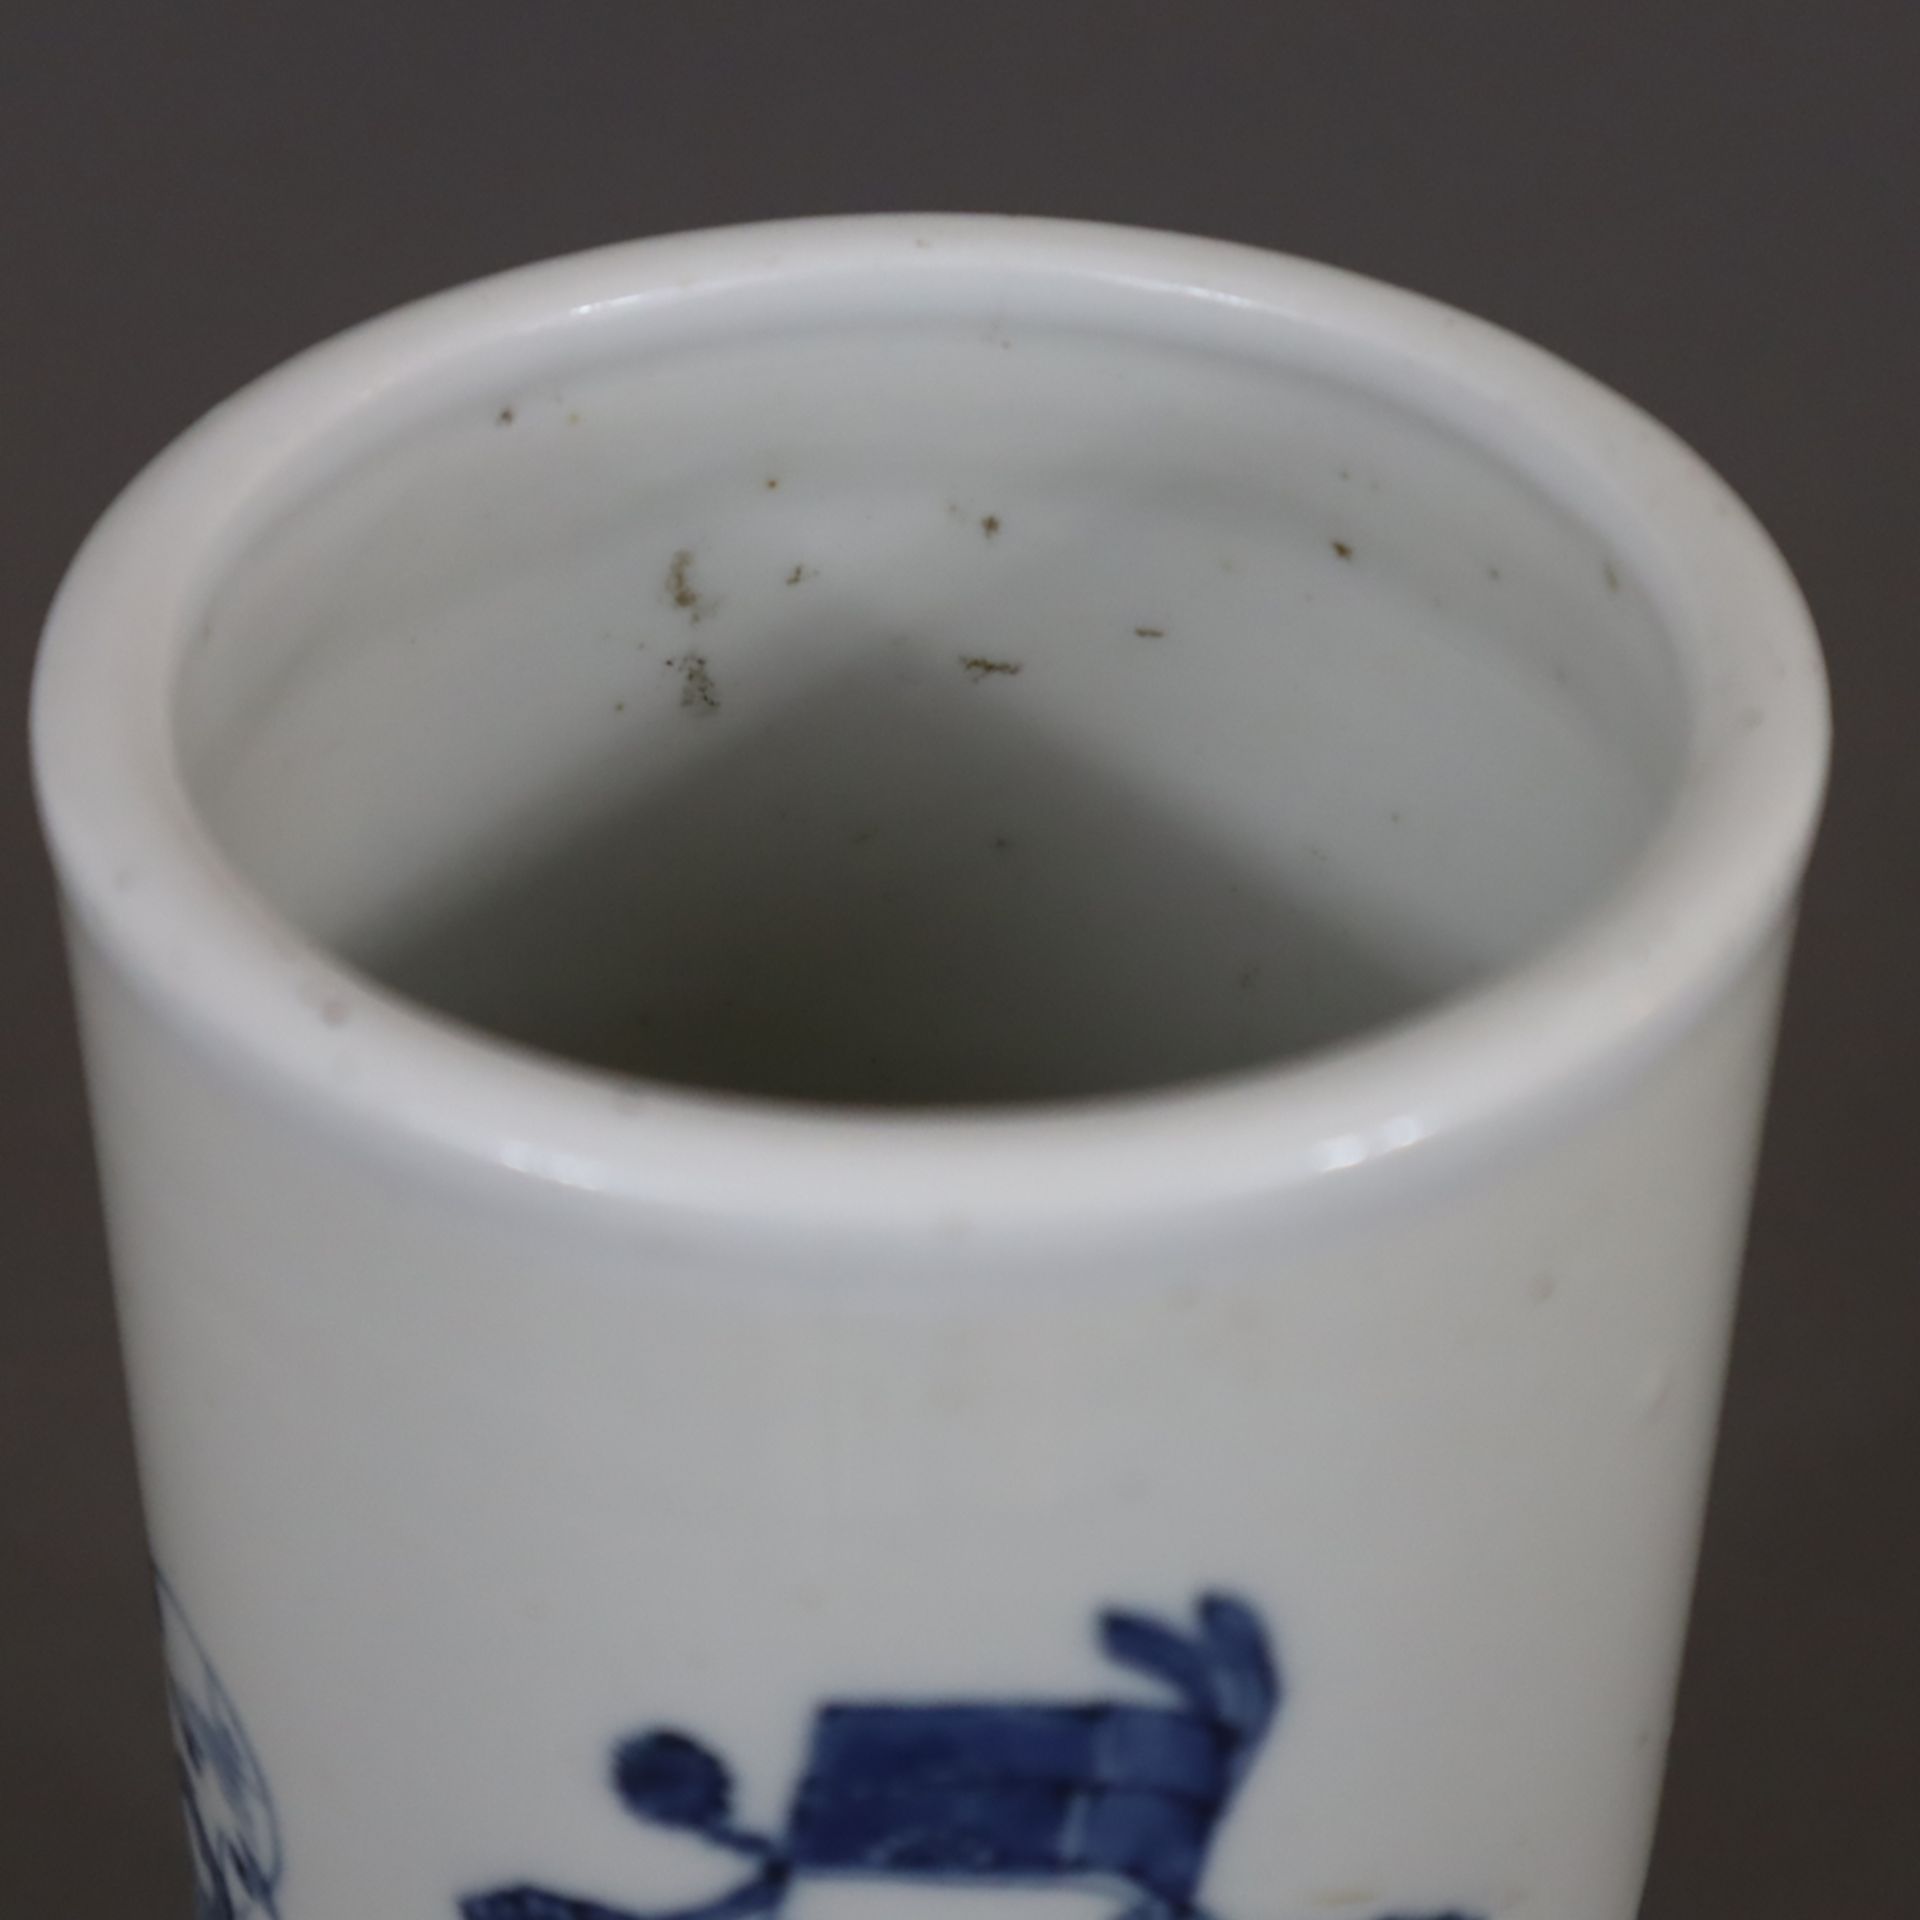 Hutstand - China, Porzellan, zylindrische Wandung, Dekor in Unterglasurblau mit den drei Glücksgött - Bild 2 aus 8